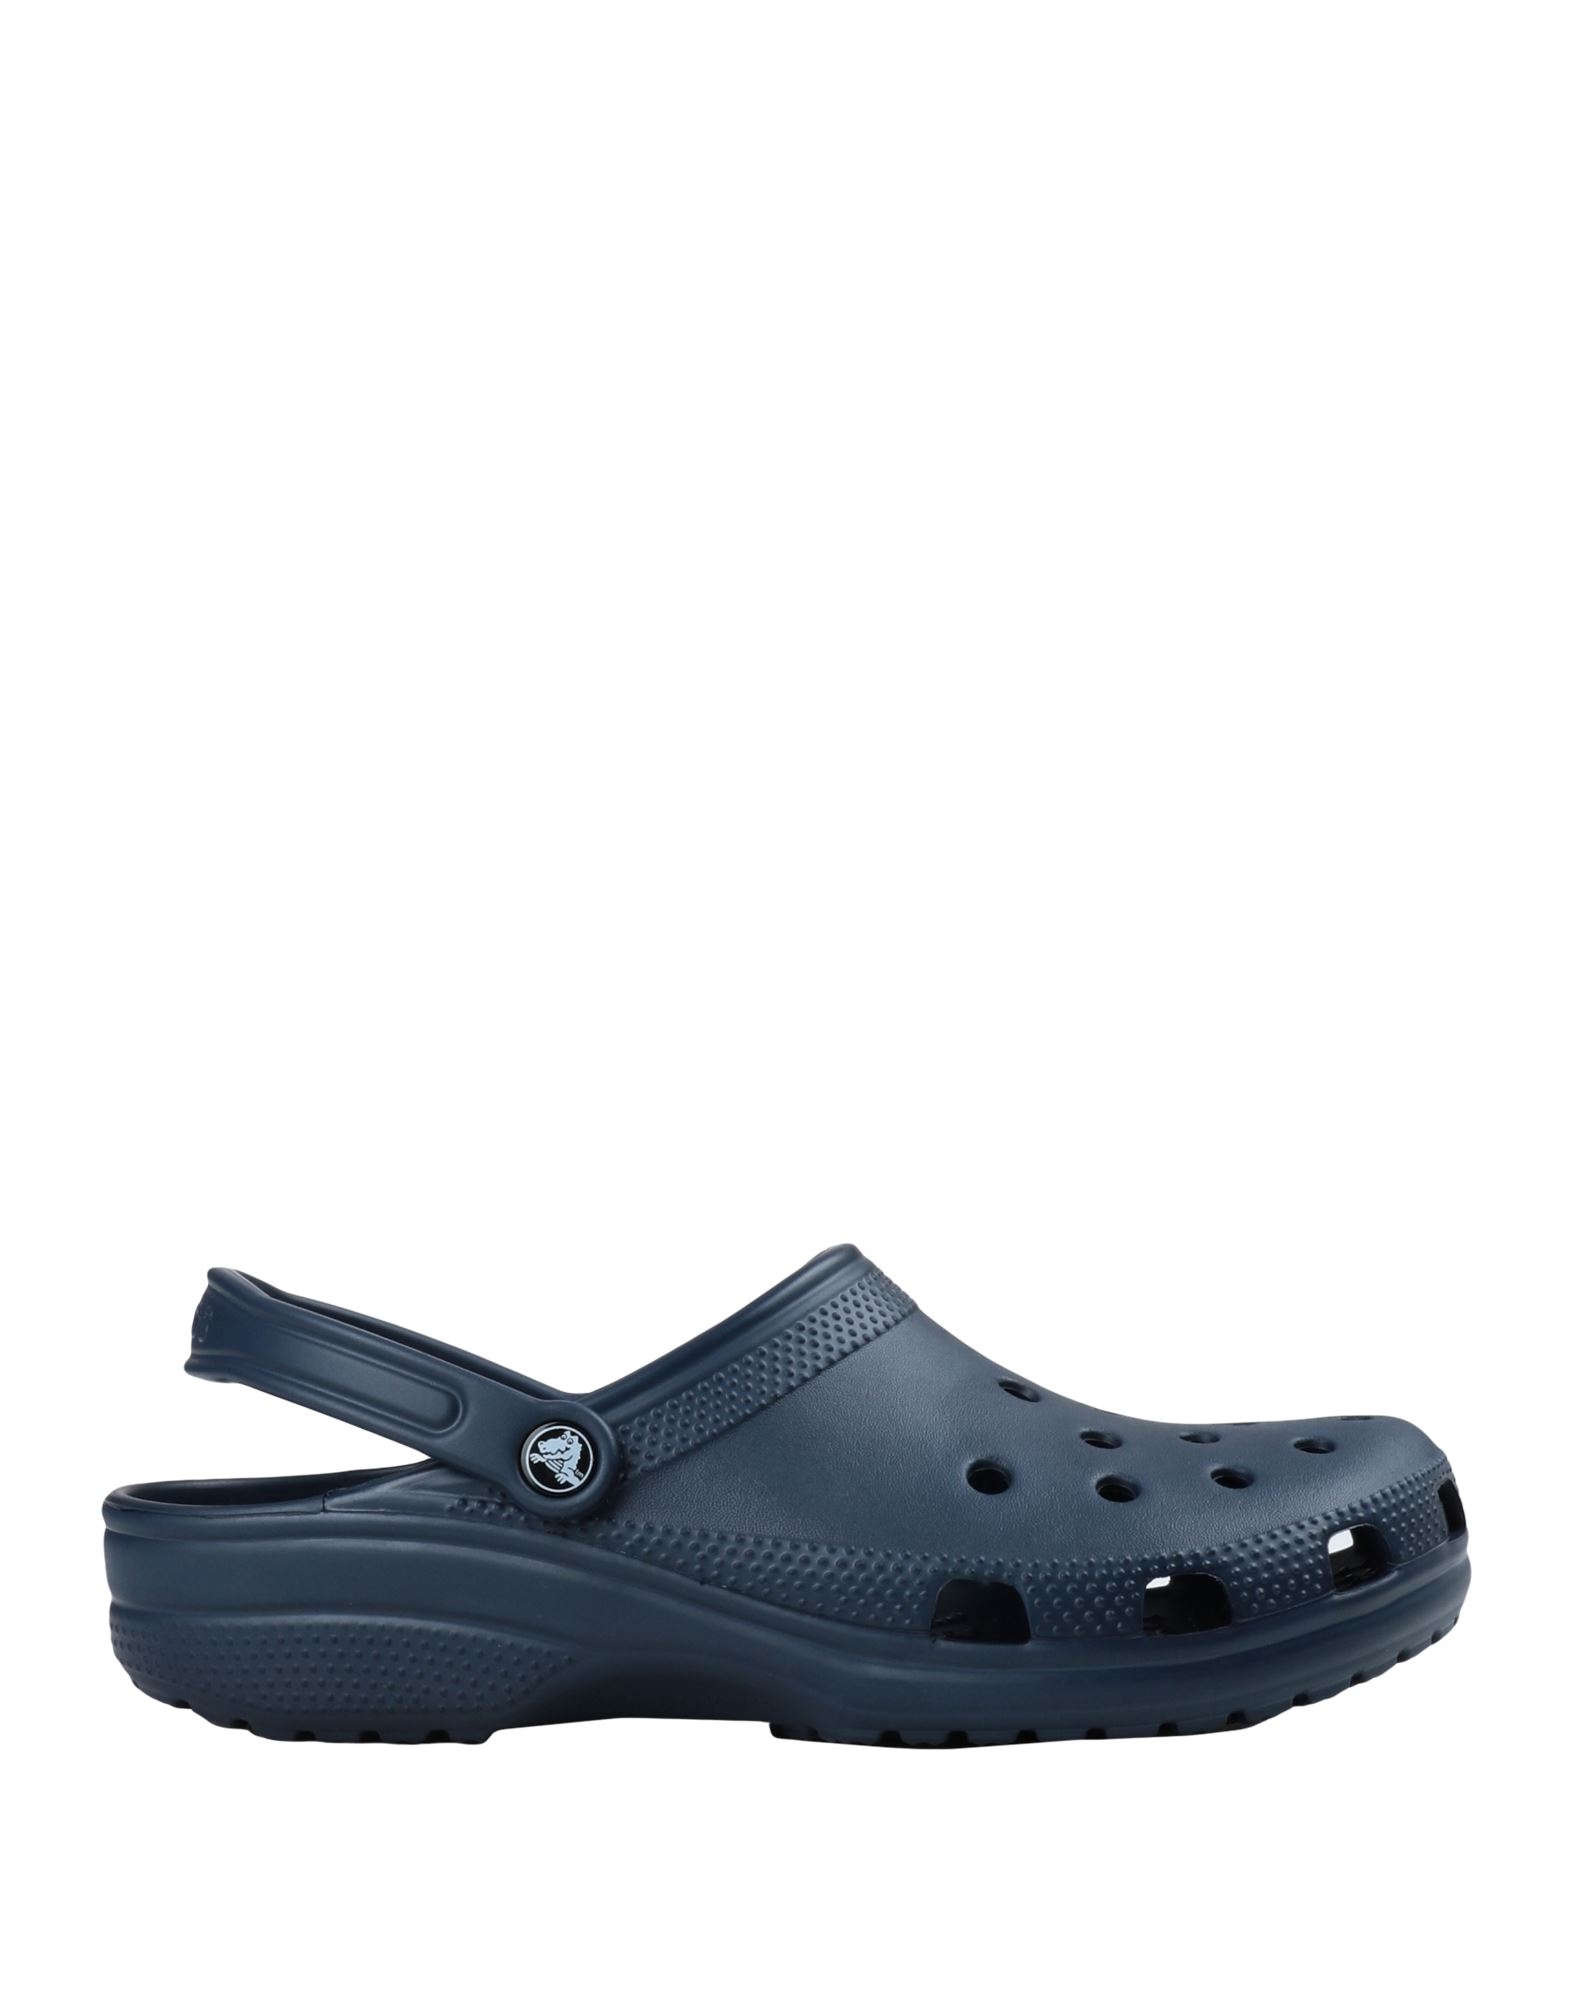 Crocs Sandals In Navy Blue